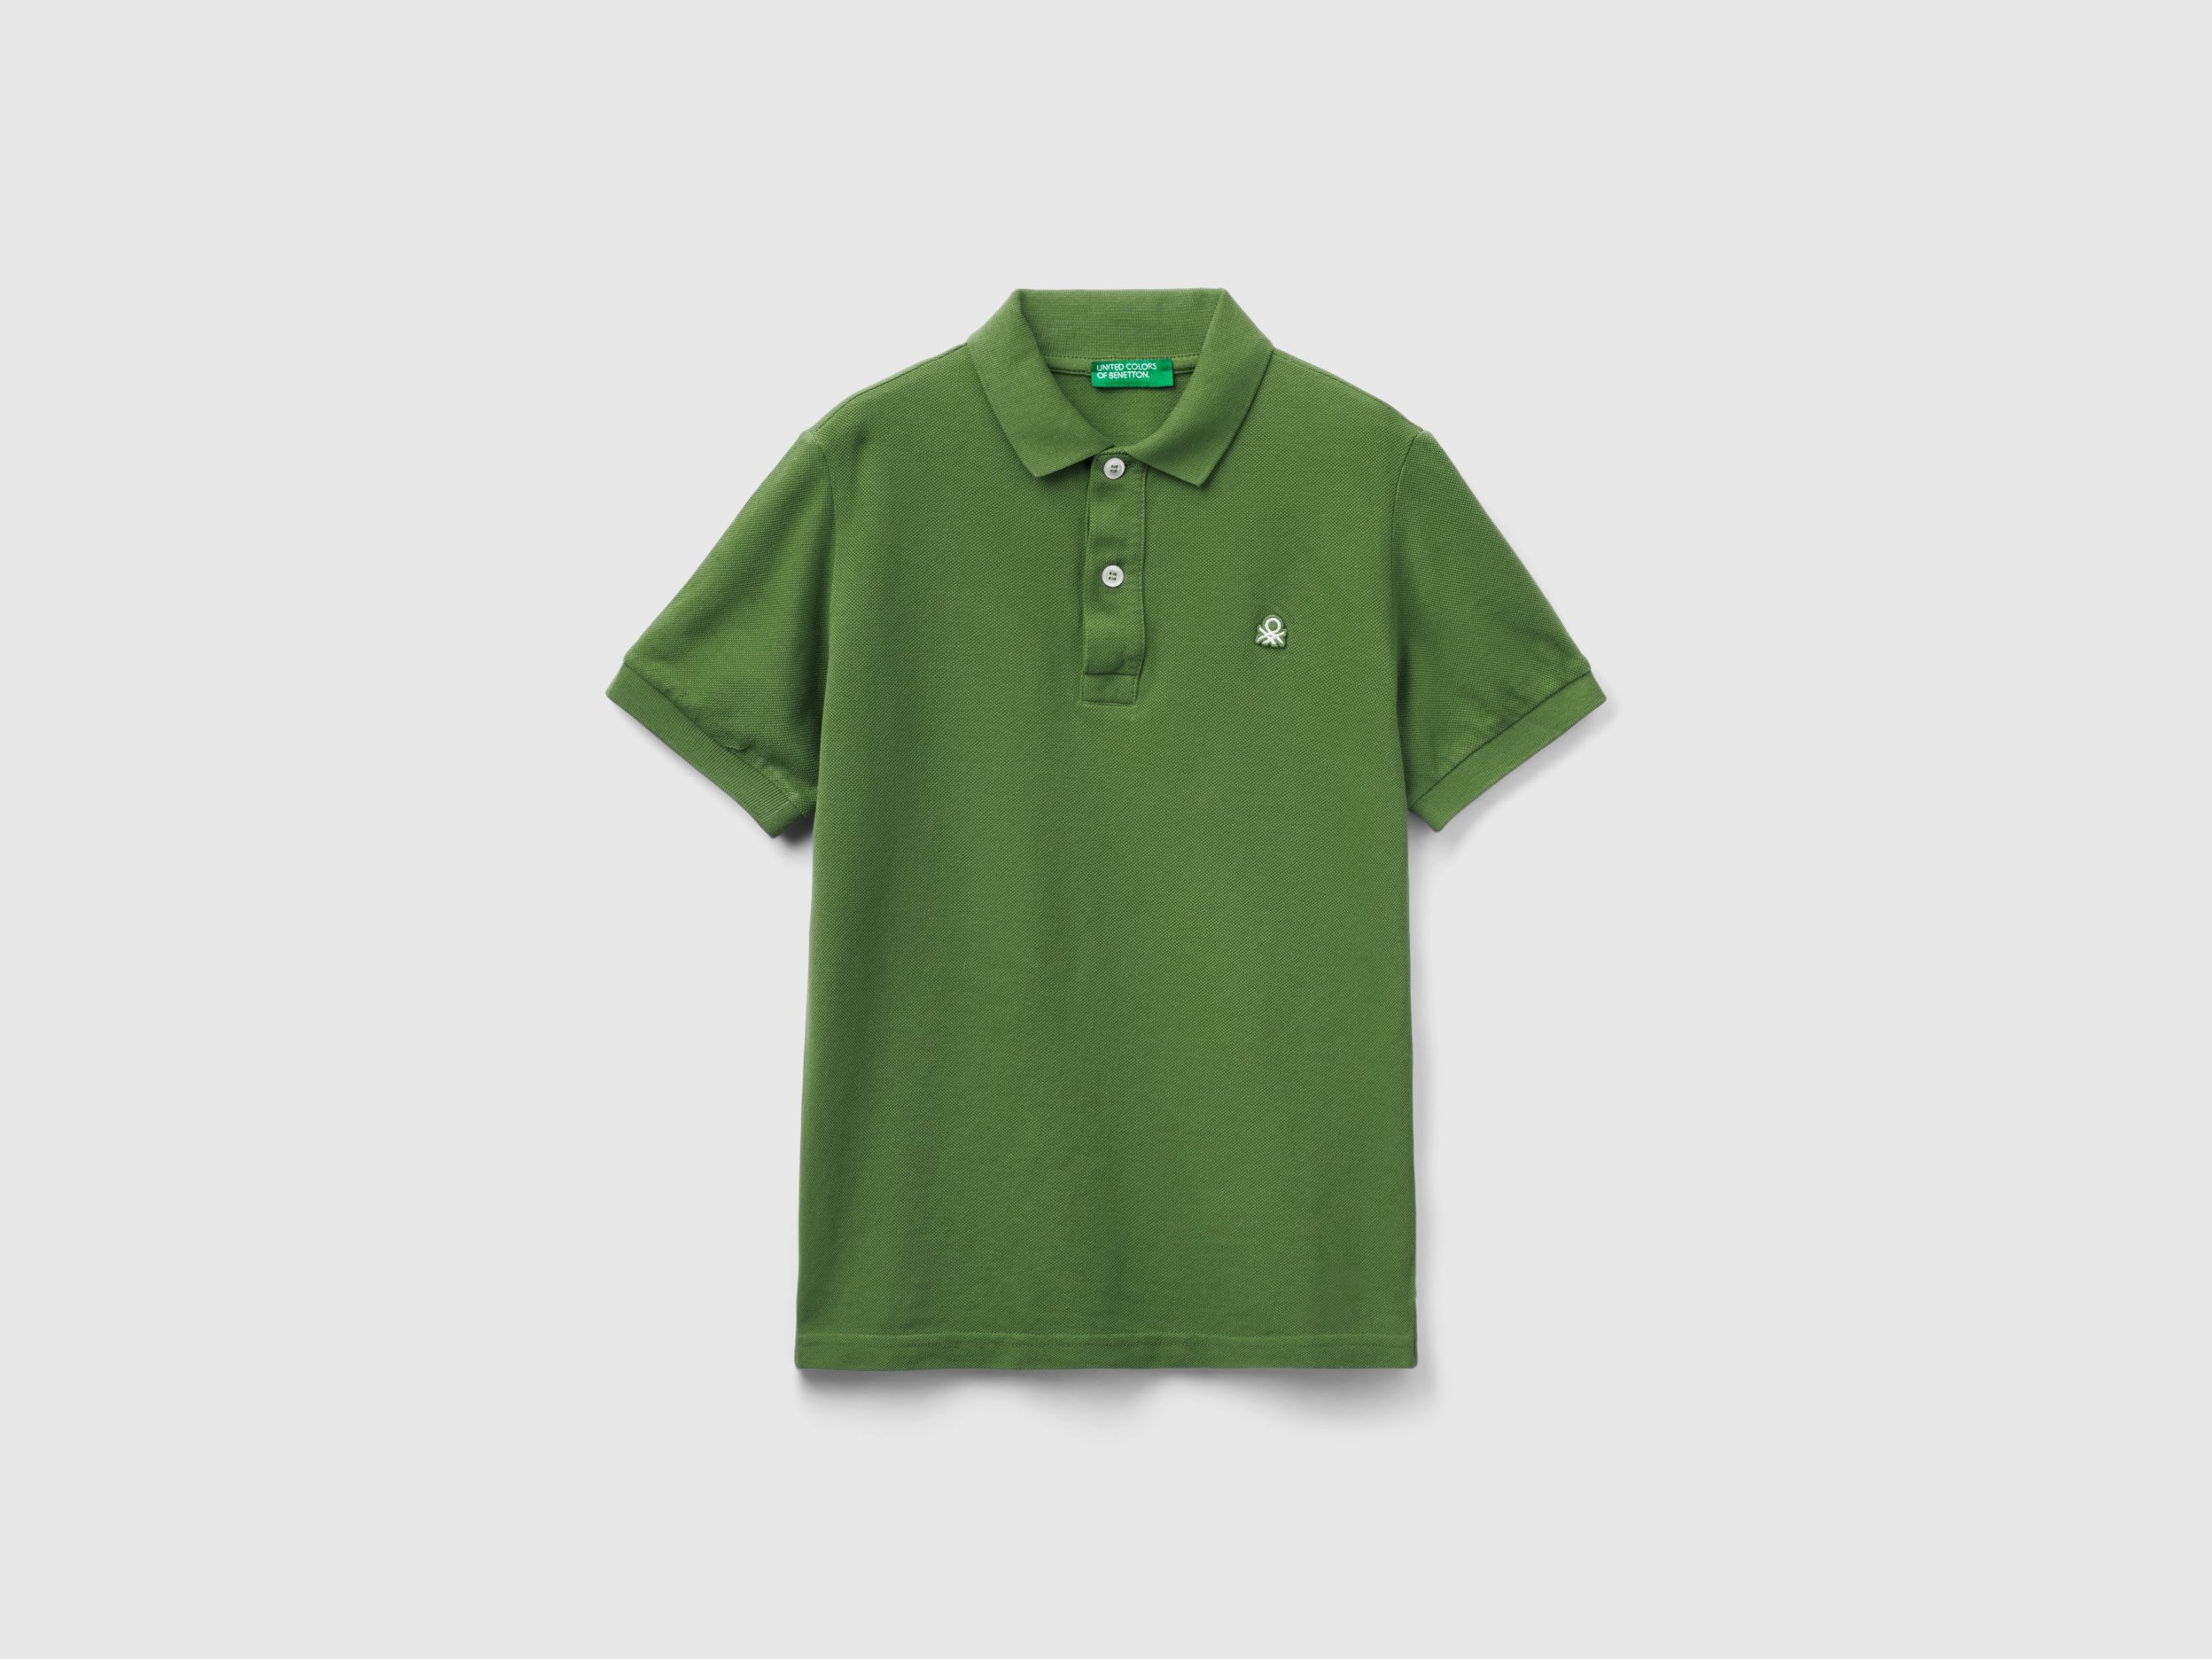 

детские хаки футболки Benetton для мальчиков 3089c300q.g